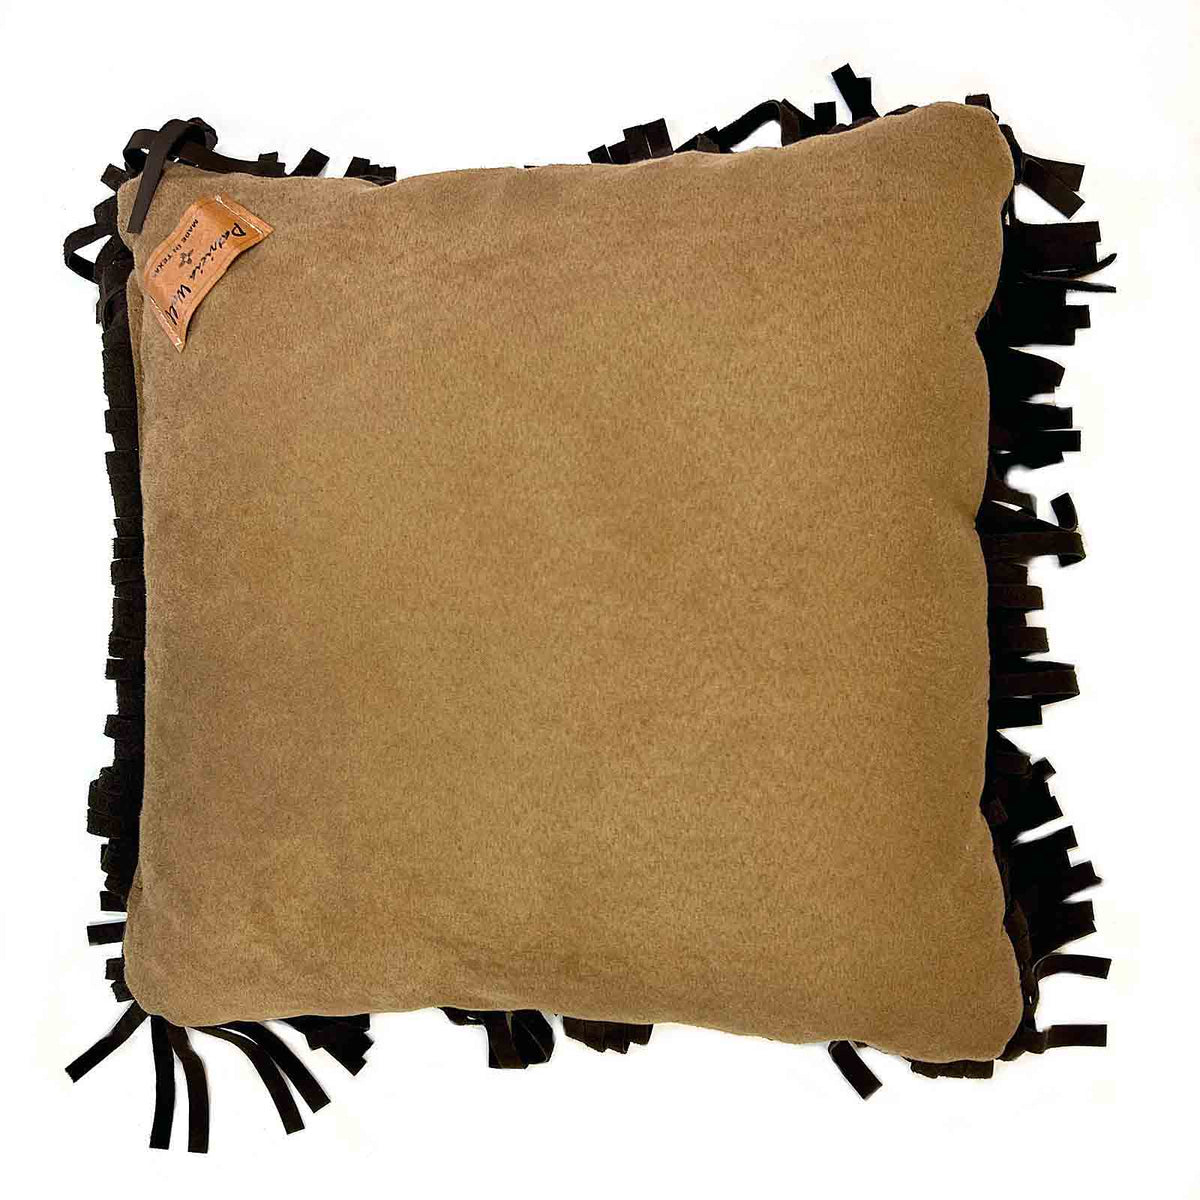 Rockmount Vintage Buffalo Bill Leather Fringe Western Pillow